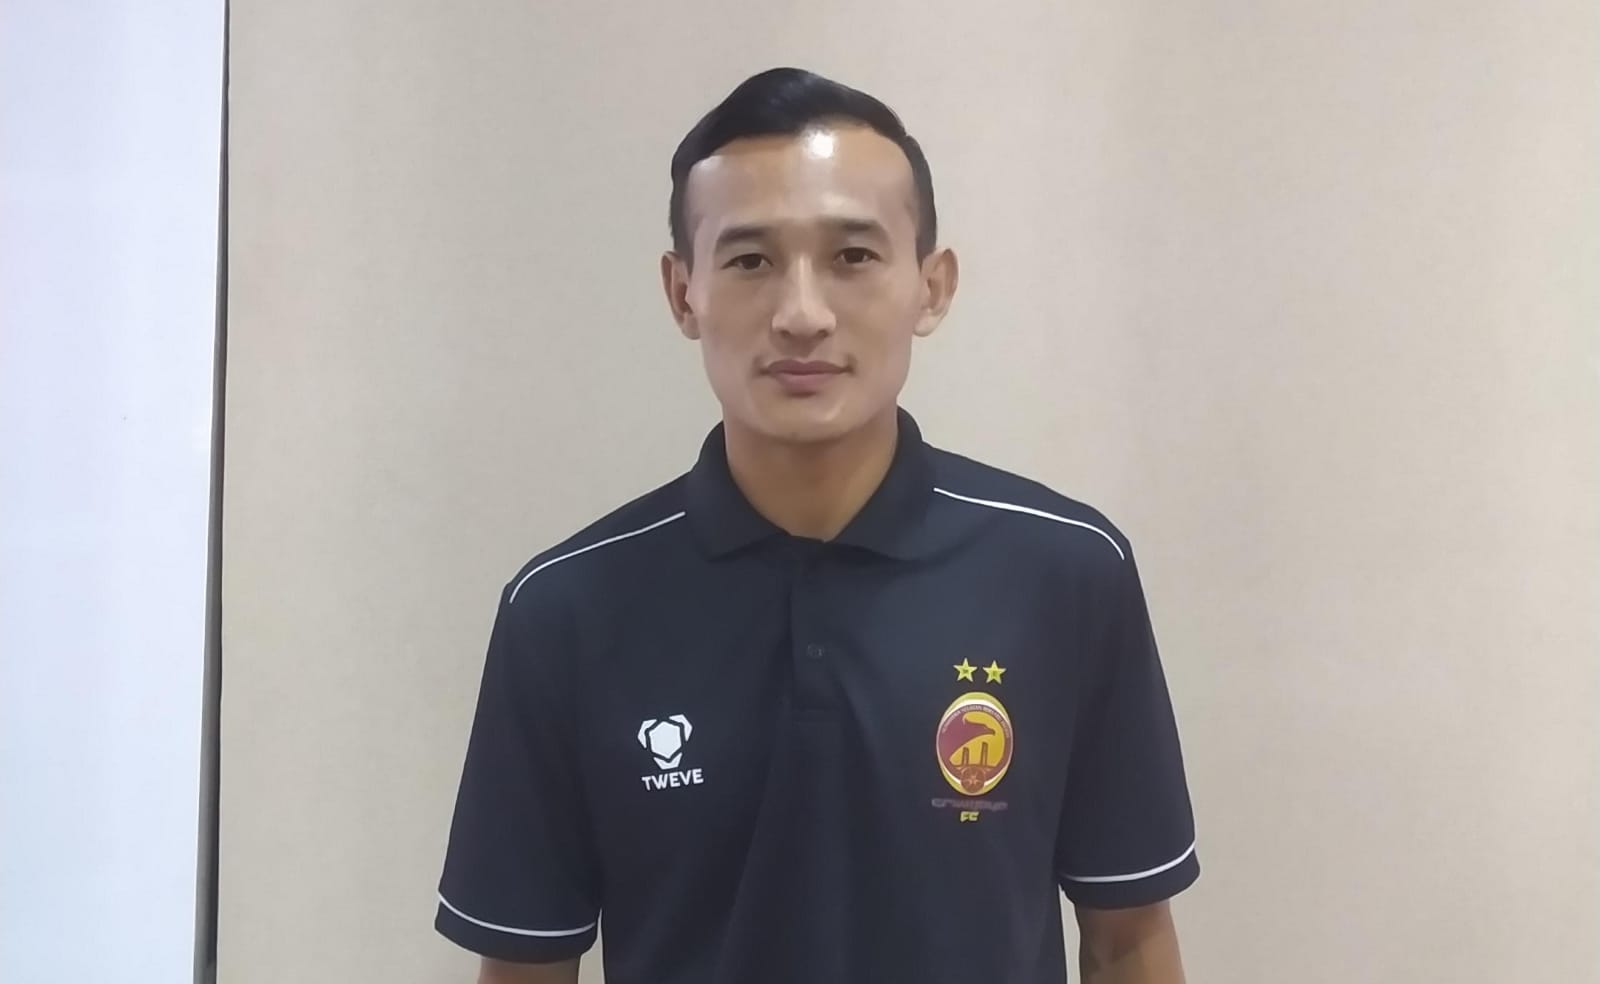 Simak Profil Lengkap Pemain Asing Sriwijaya FC Chencho Gyeltshen, Sang Kapten Timnas Bhutan Dijuluki Ronaldo